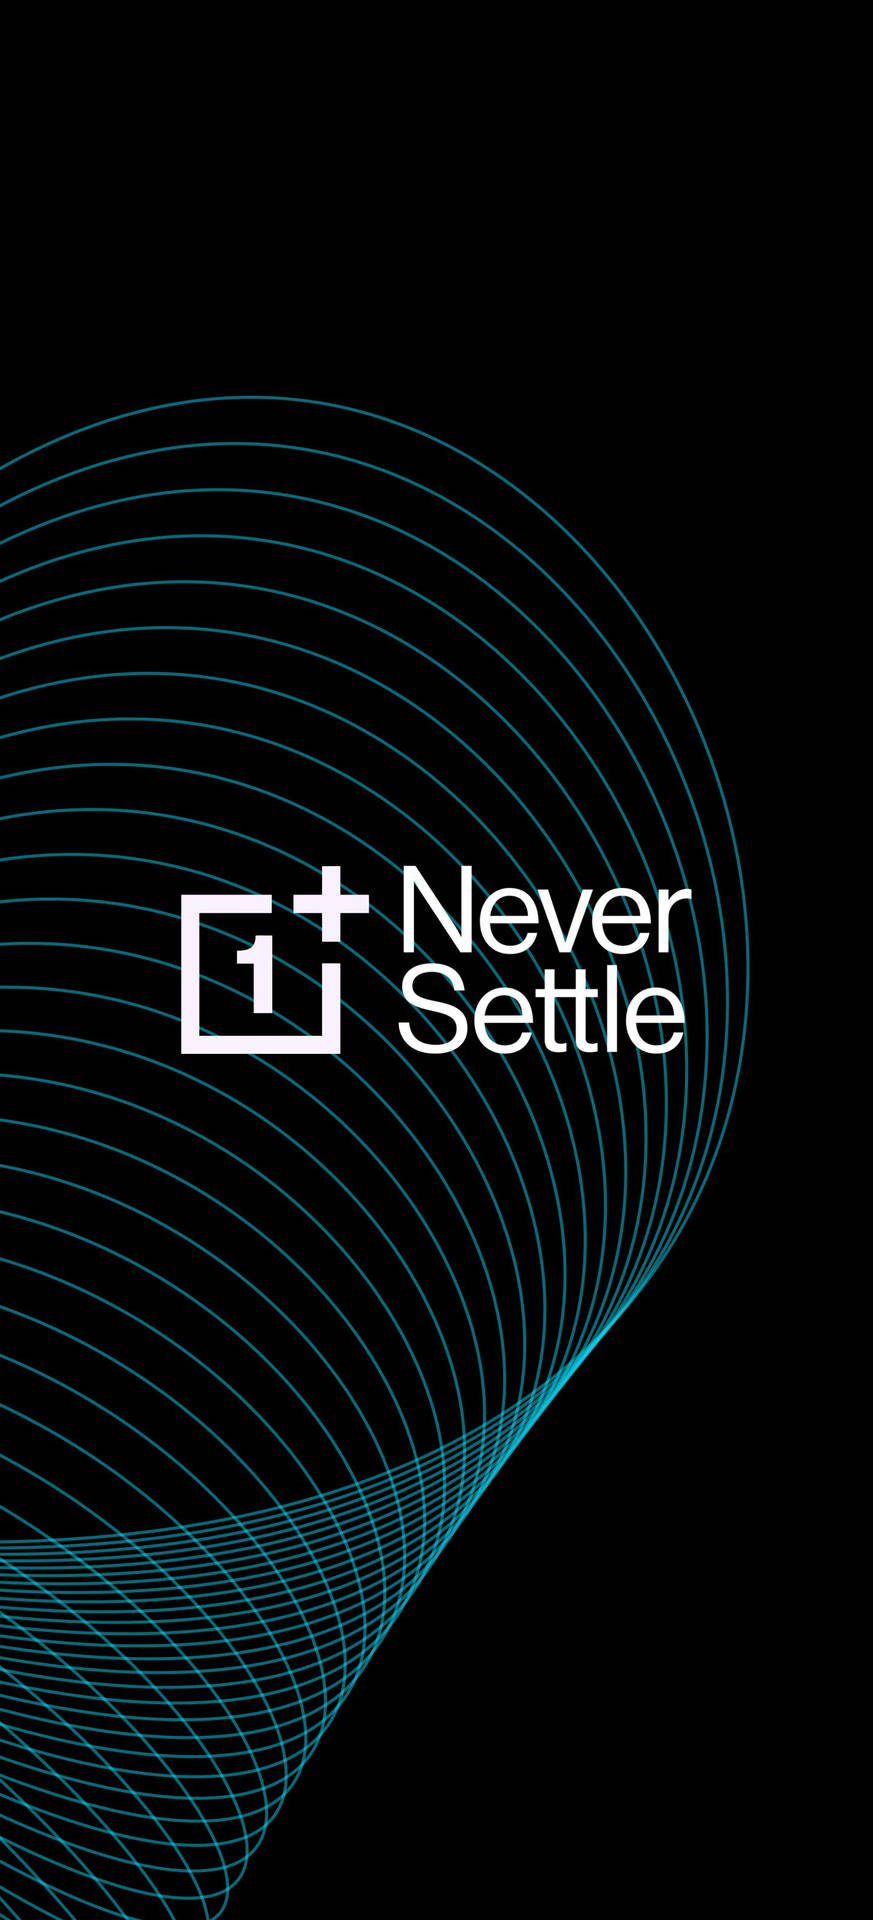 Innovative Technology - OnePlus Never Settle Design Wallpaper